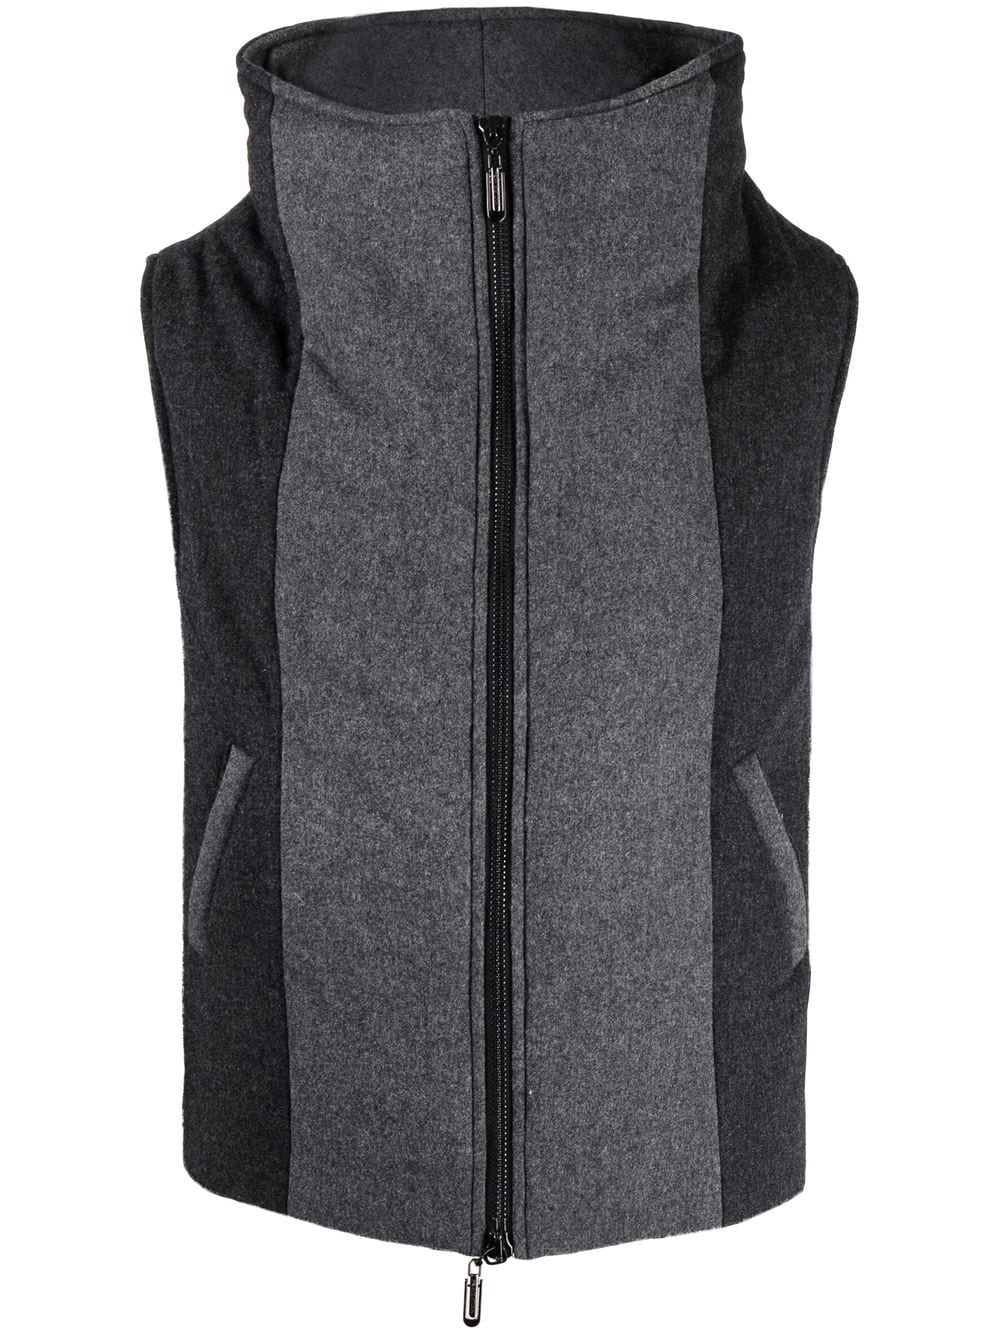 The Vulcan vest